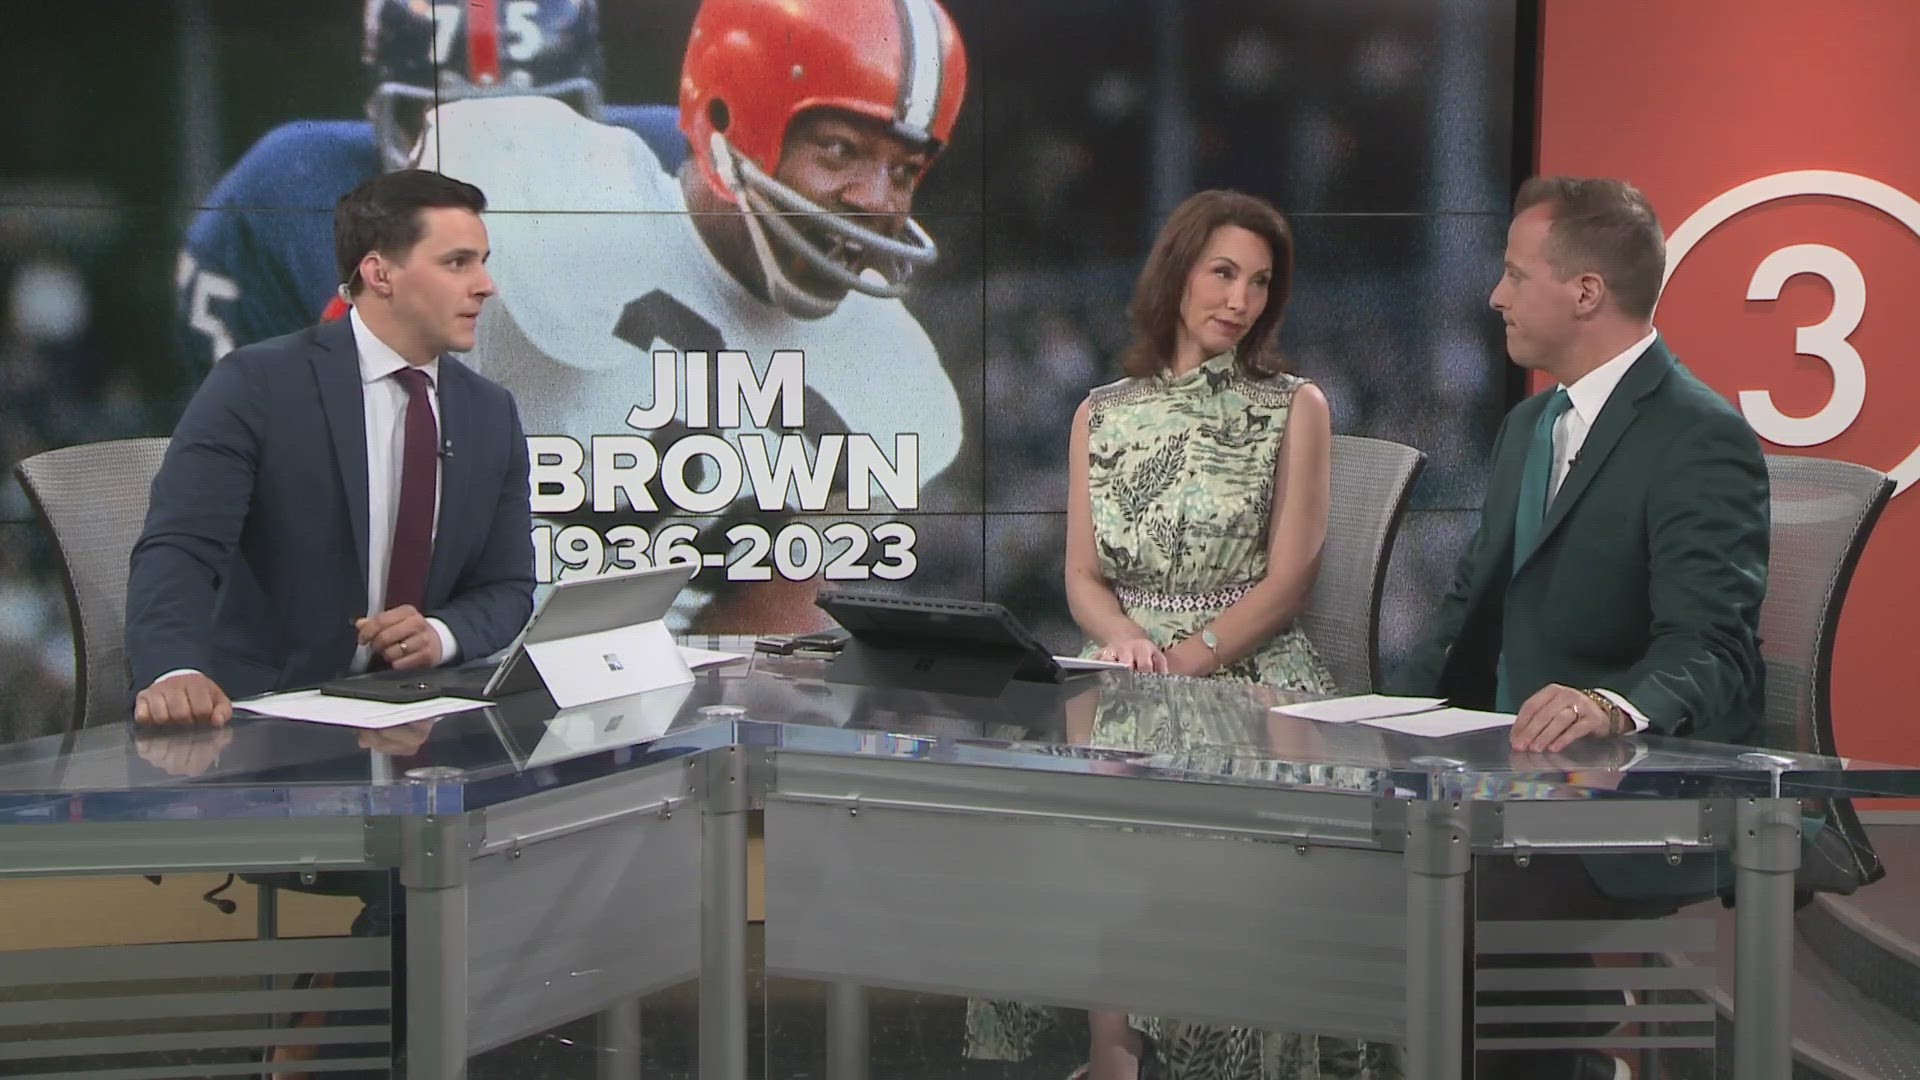 NFL Legend Jim Brown passes away at 87